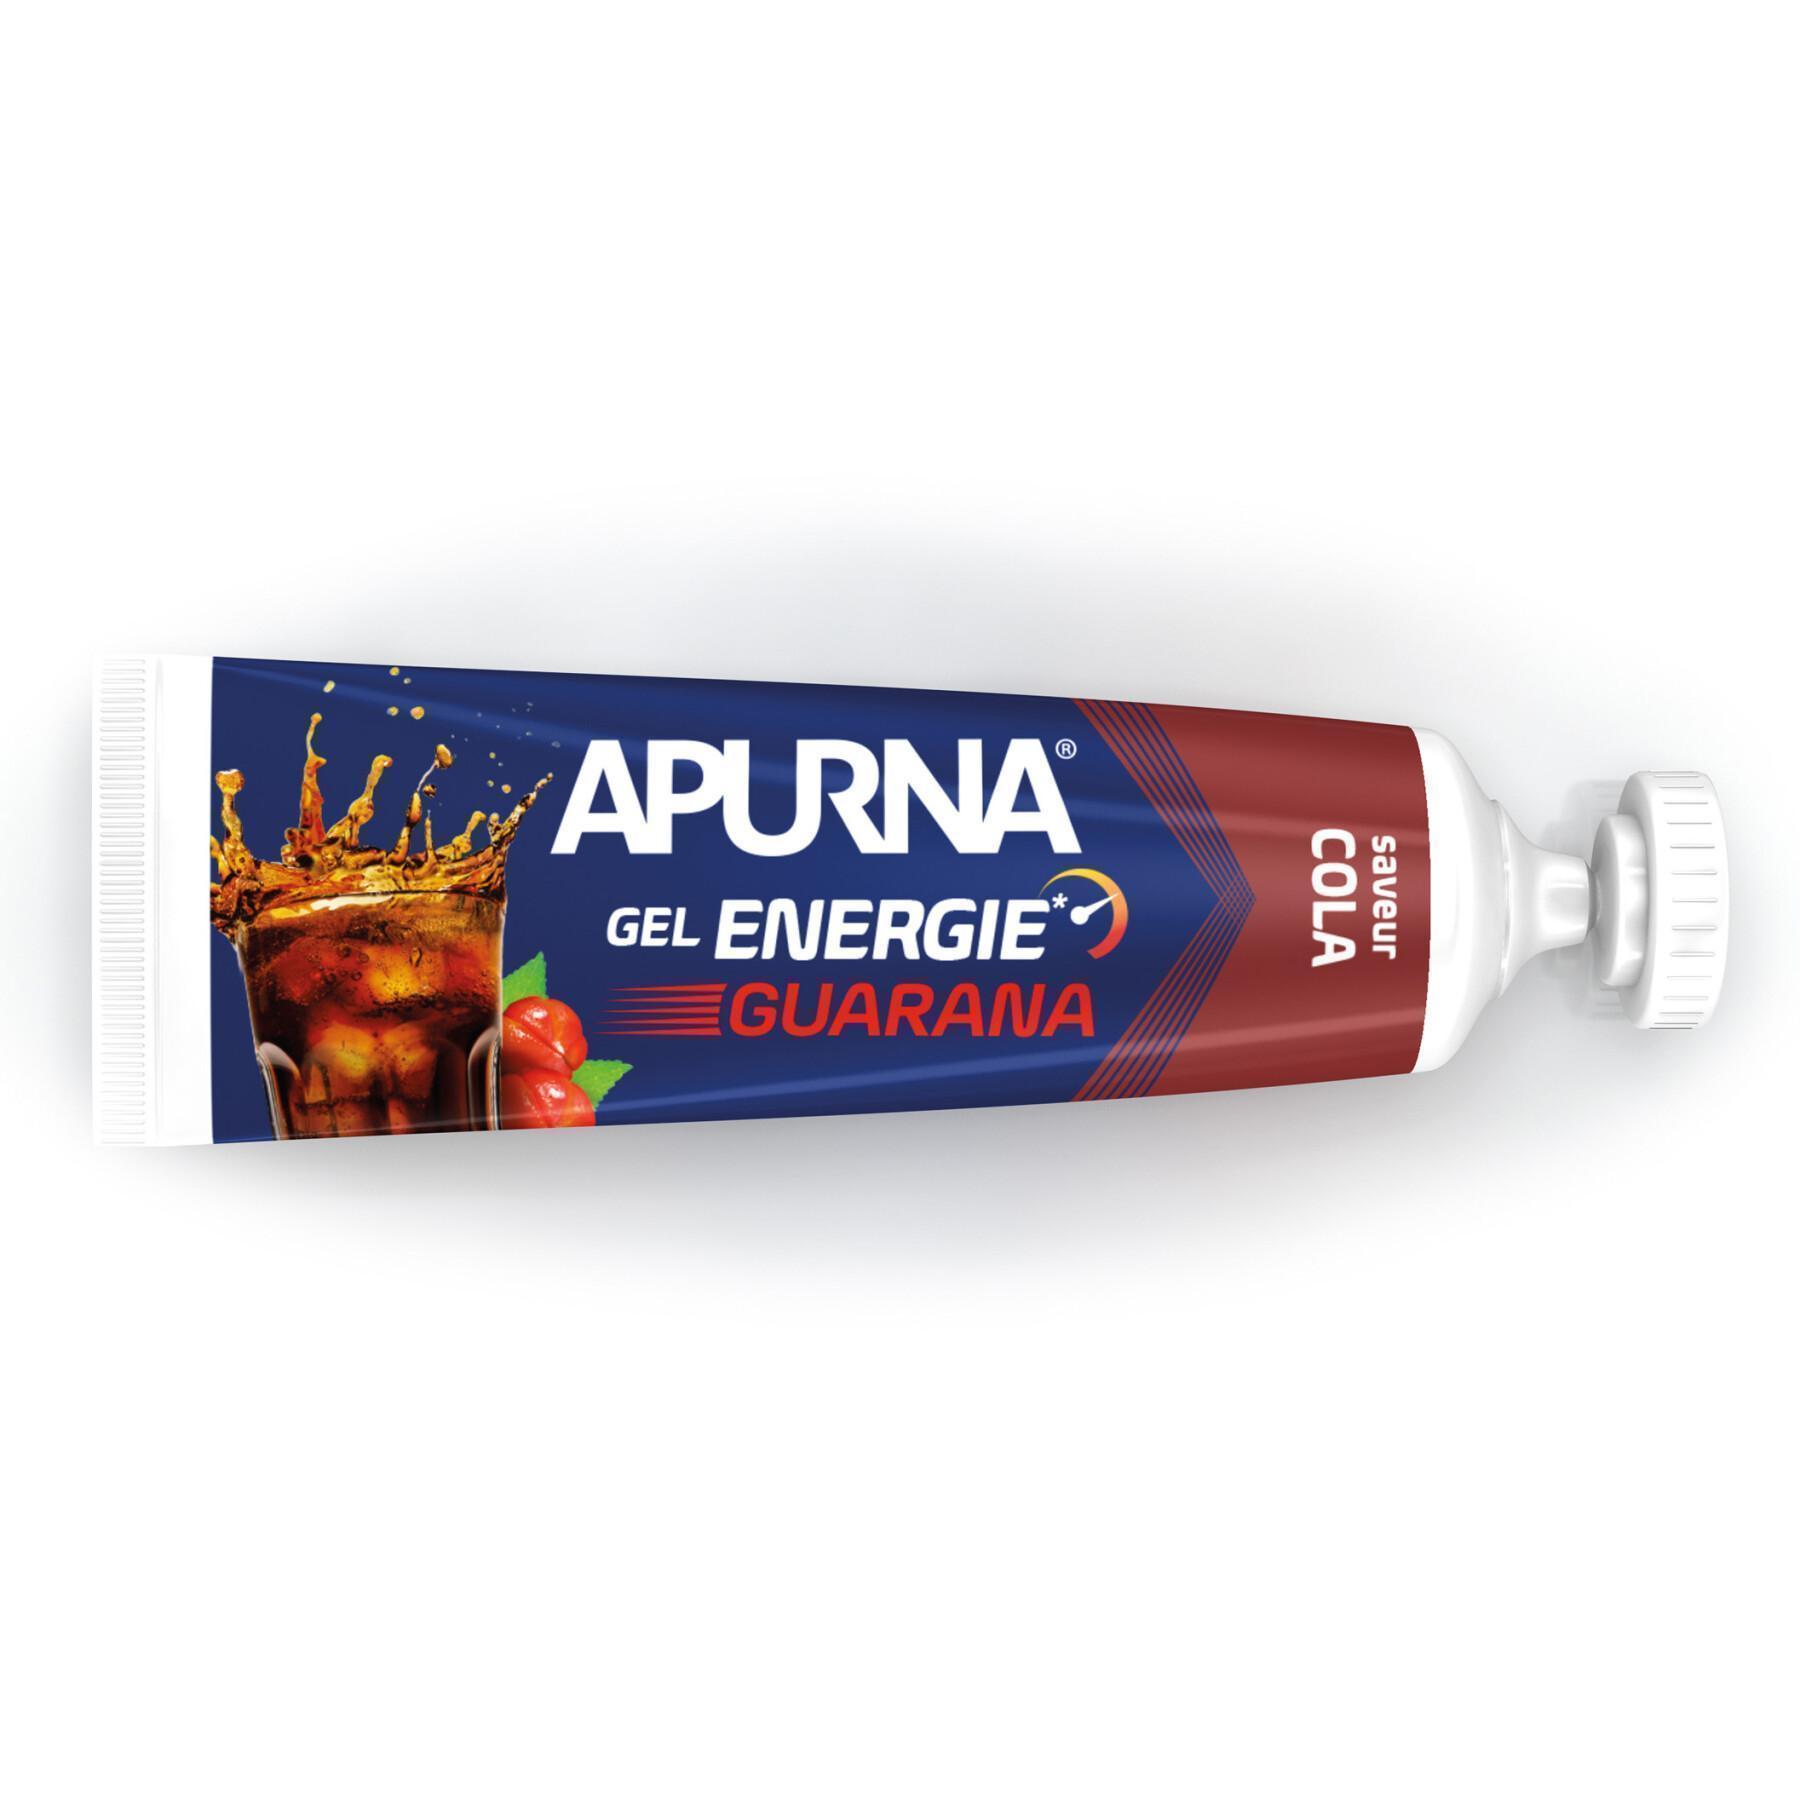 Lot de 25 gels Apurna Energie guarana cola - 35g